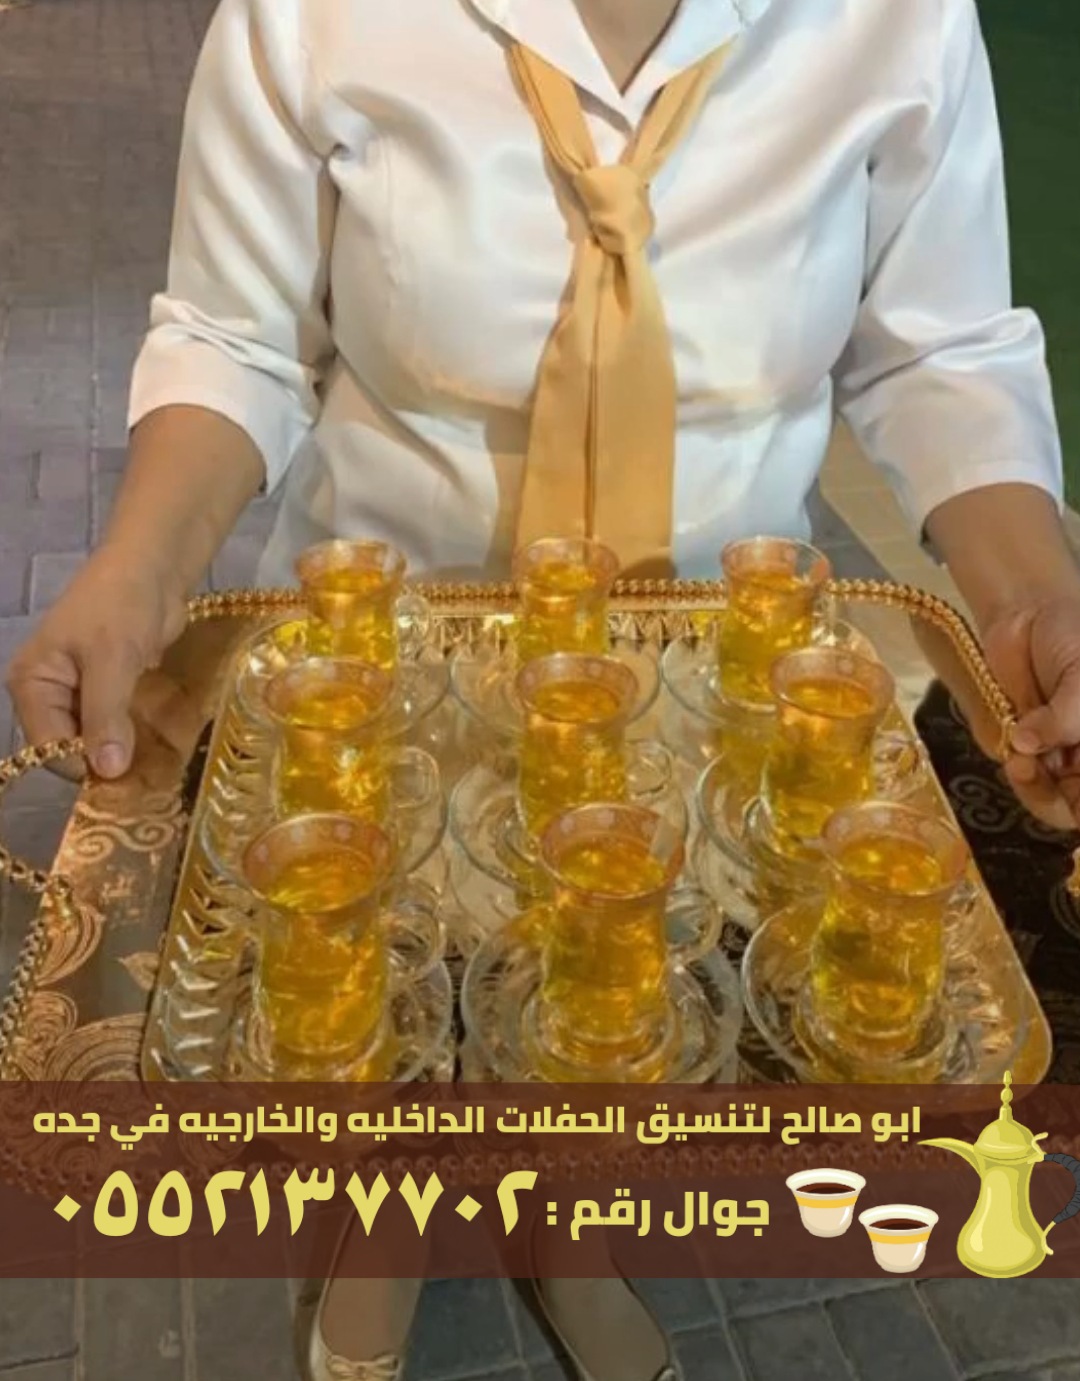 صبابابين قهوة رجال ونساء في جدة, 0552137702 P_2456evv6f3